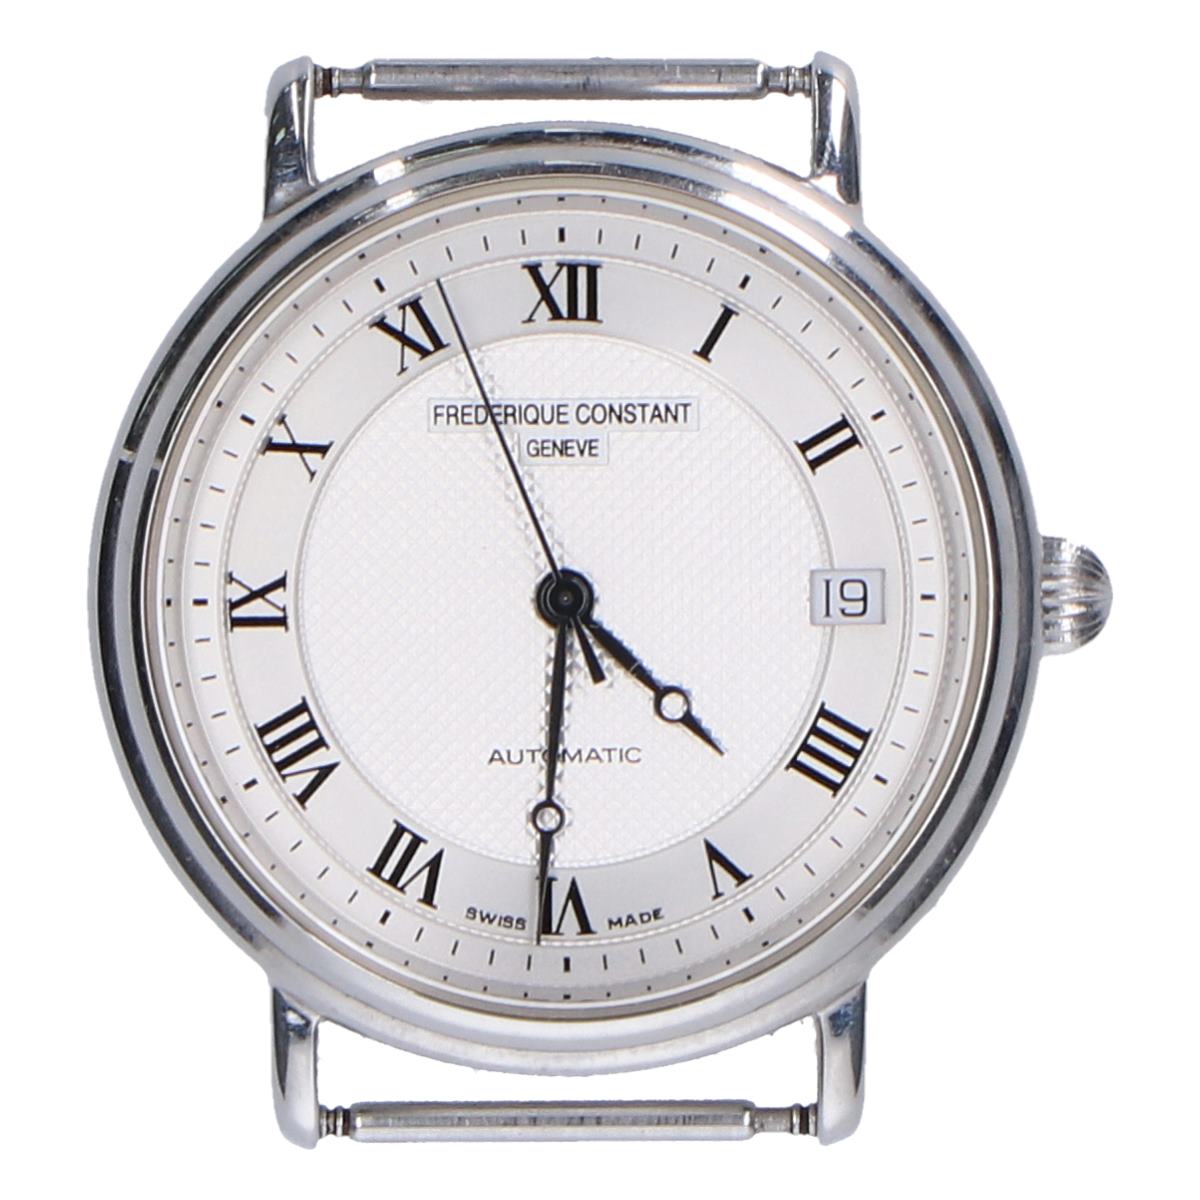 フレデリックコンスタントのFC300/310x35/36 クラシック ステンレス バックスケルトン 自動巻き時計の買取実績です。